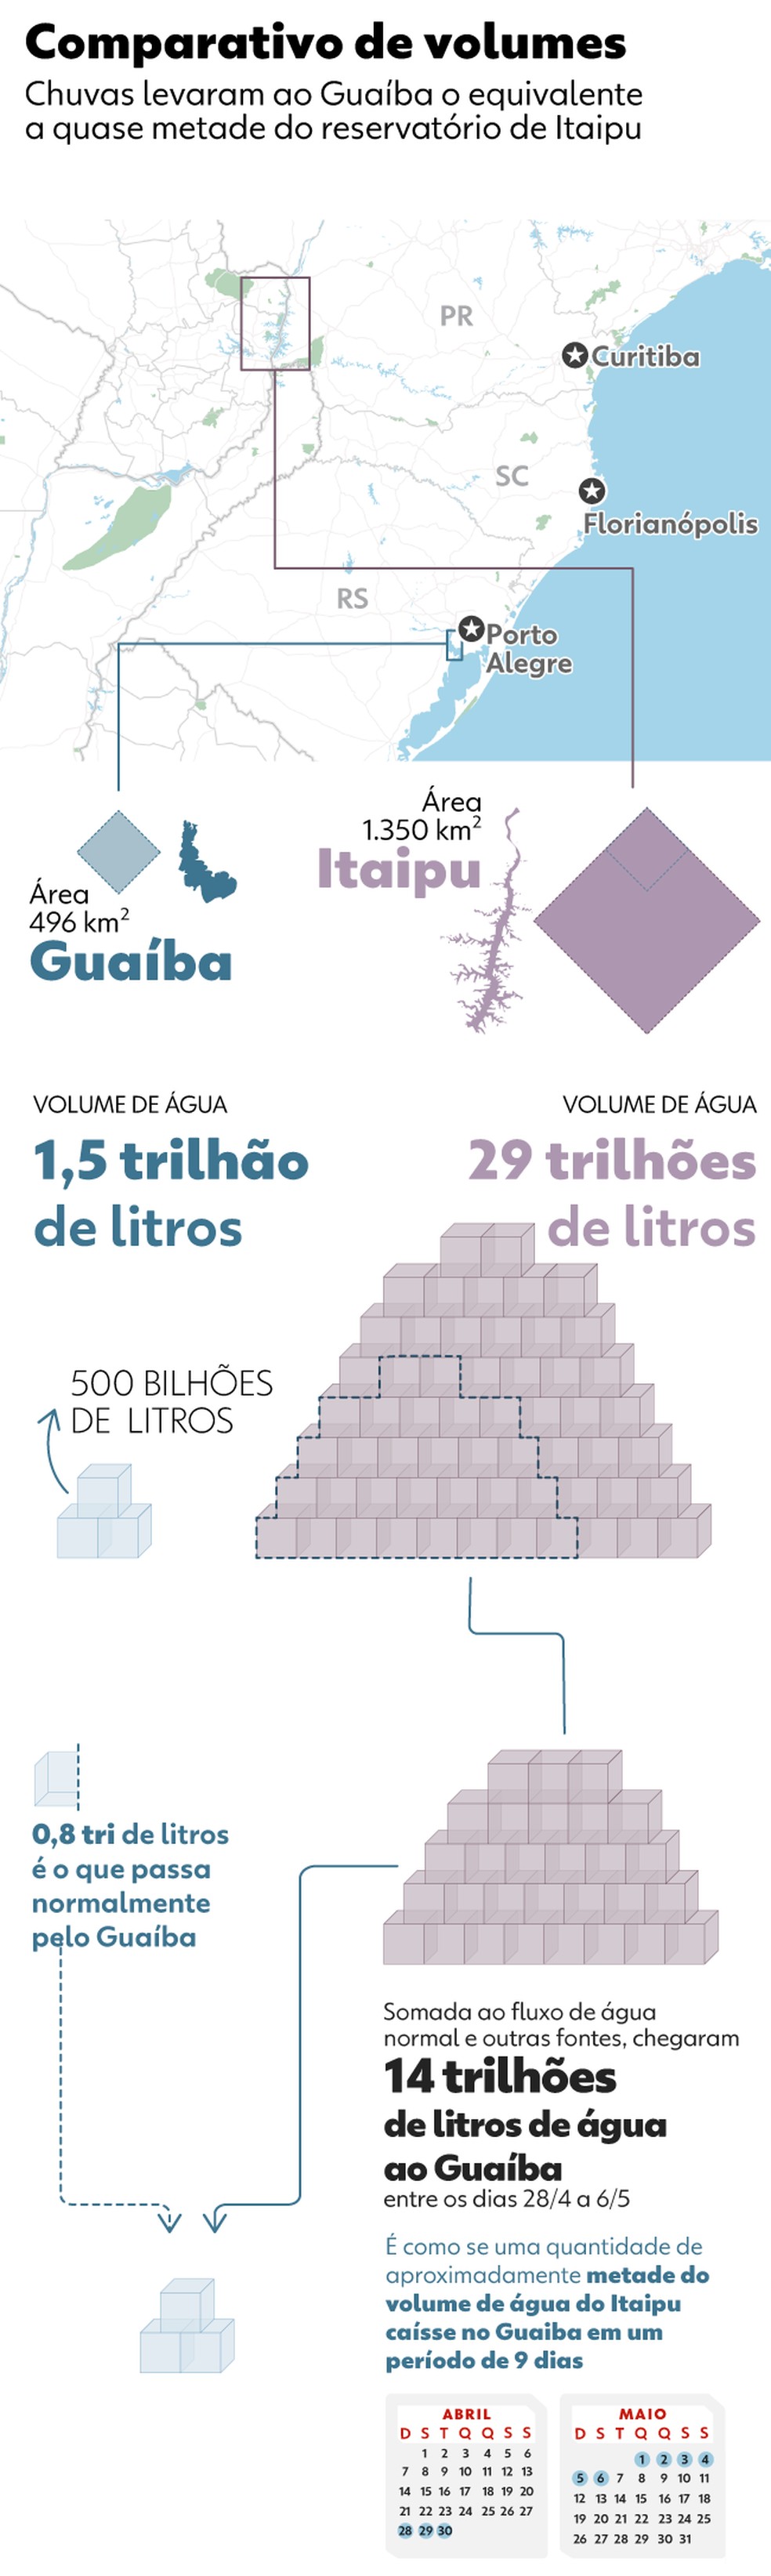 Comparativo do volume recebido pelo Guaíba com o reservatório de Itaipu — Foto: Barbara Miranda/Arte g1